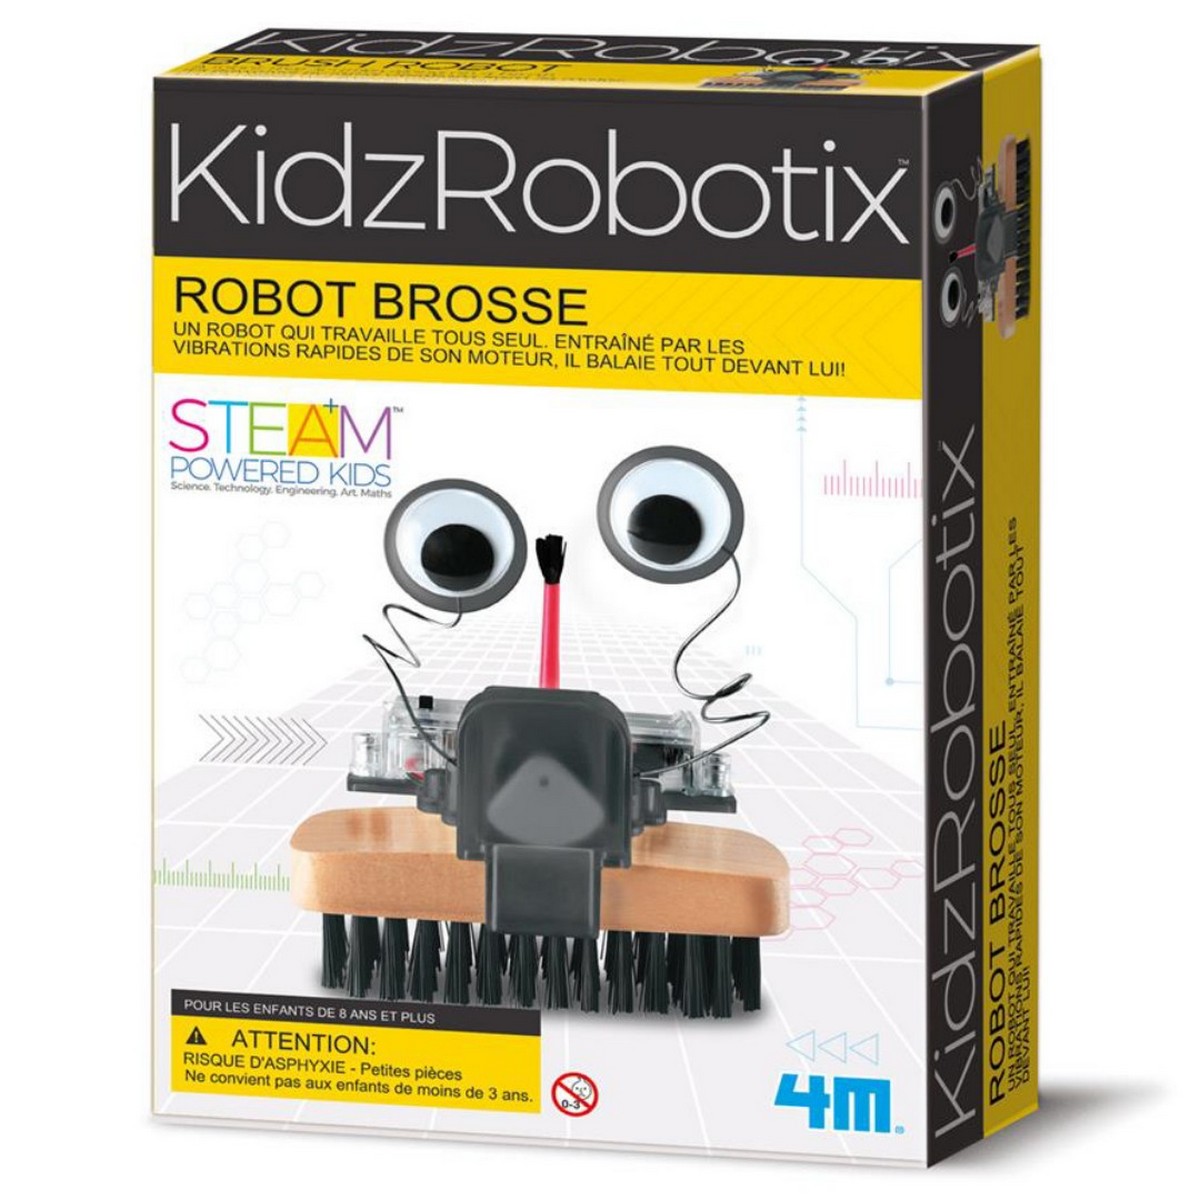 Robot brosse KidzRobotix